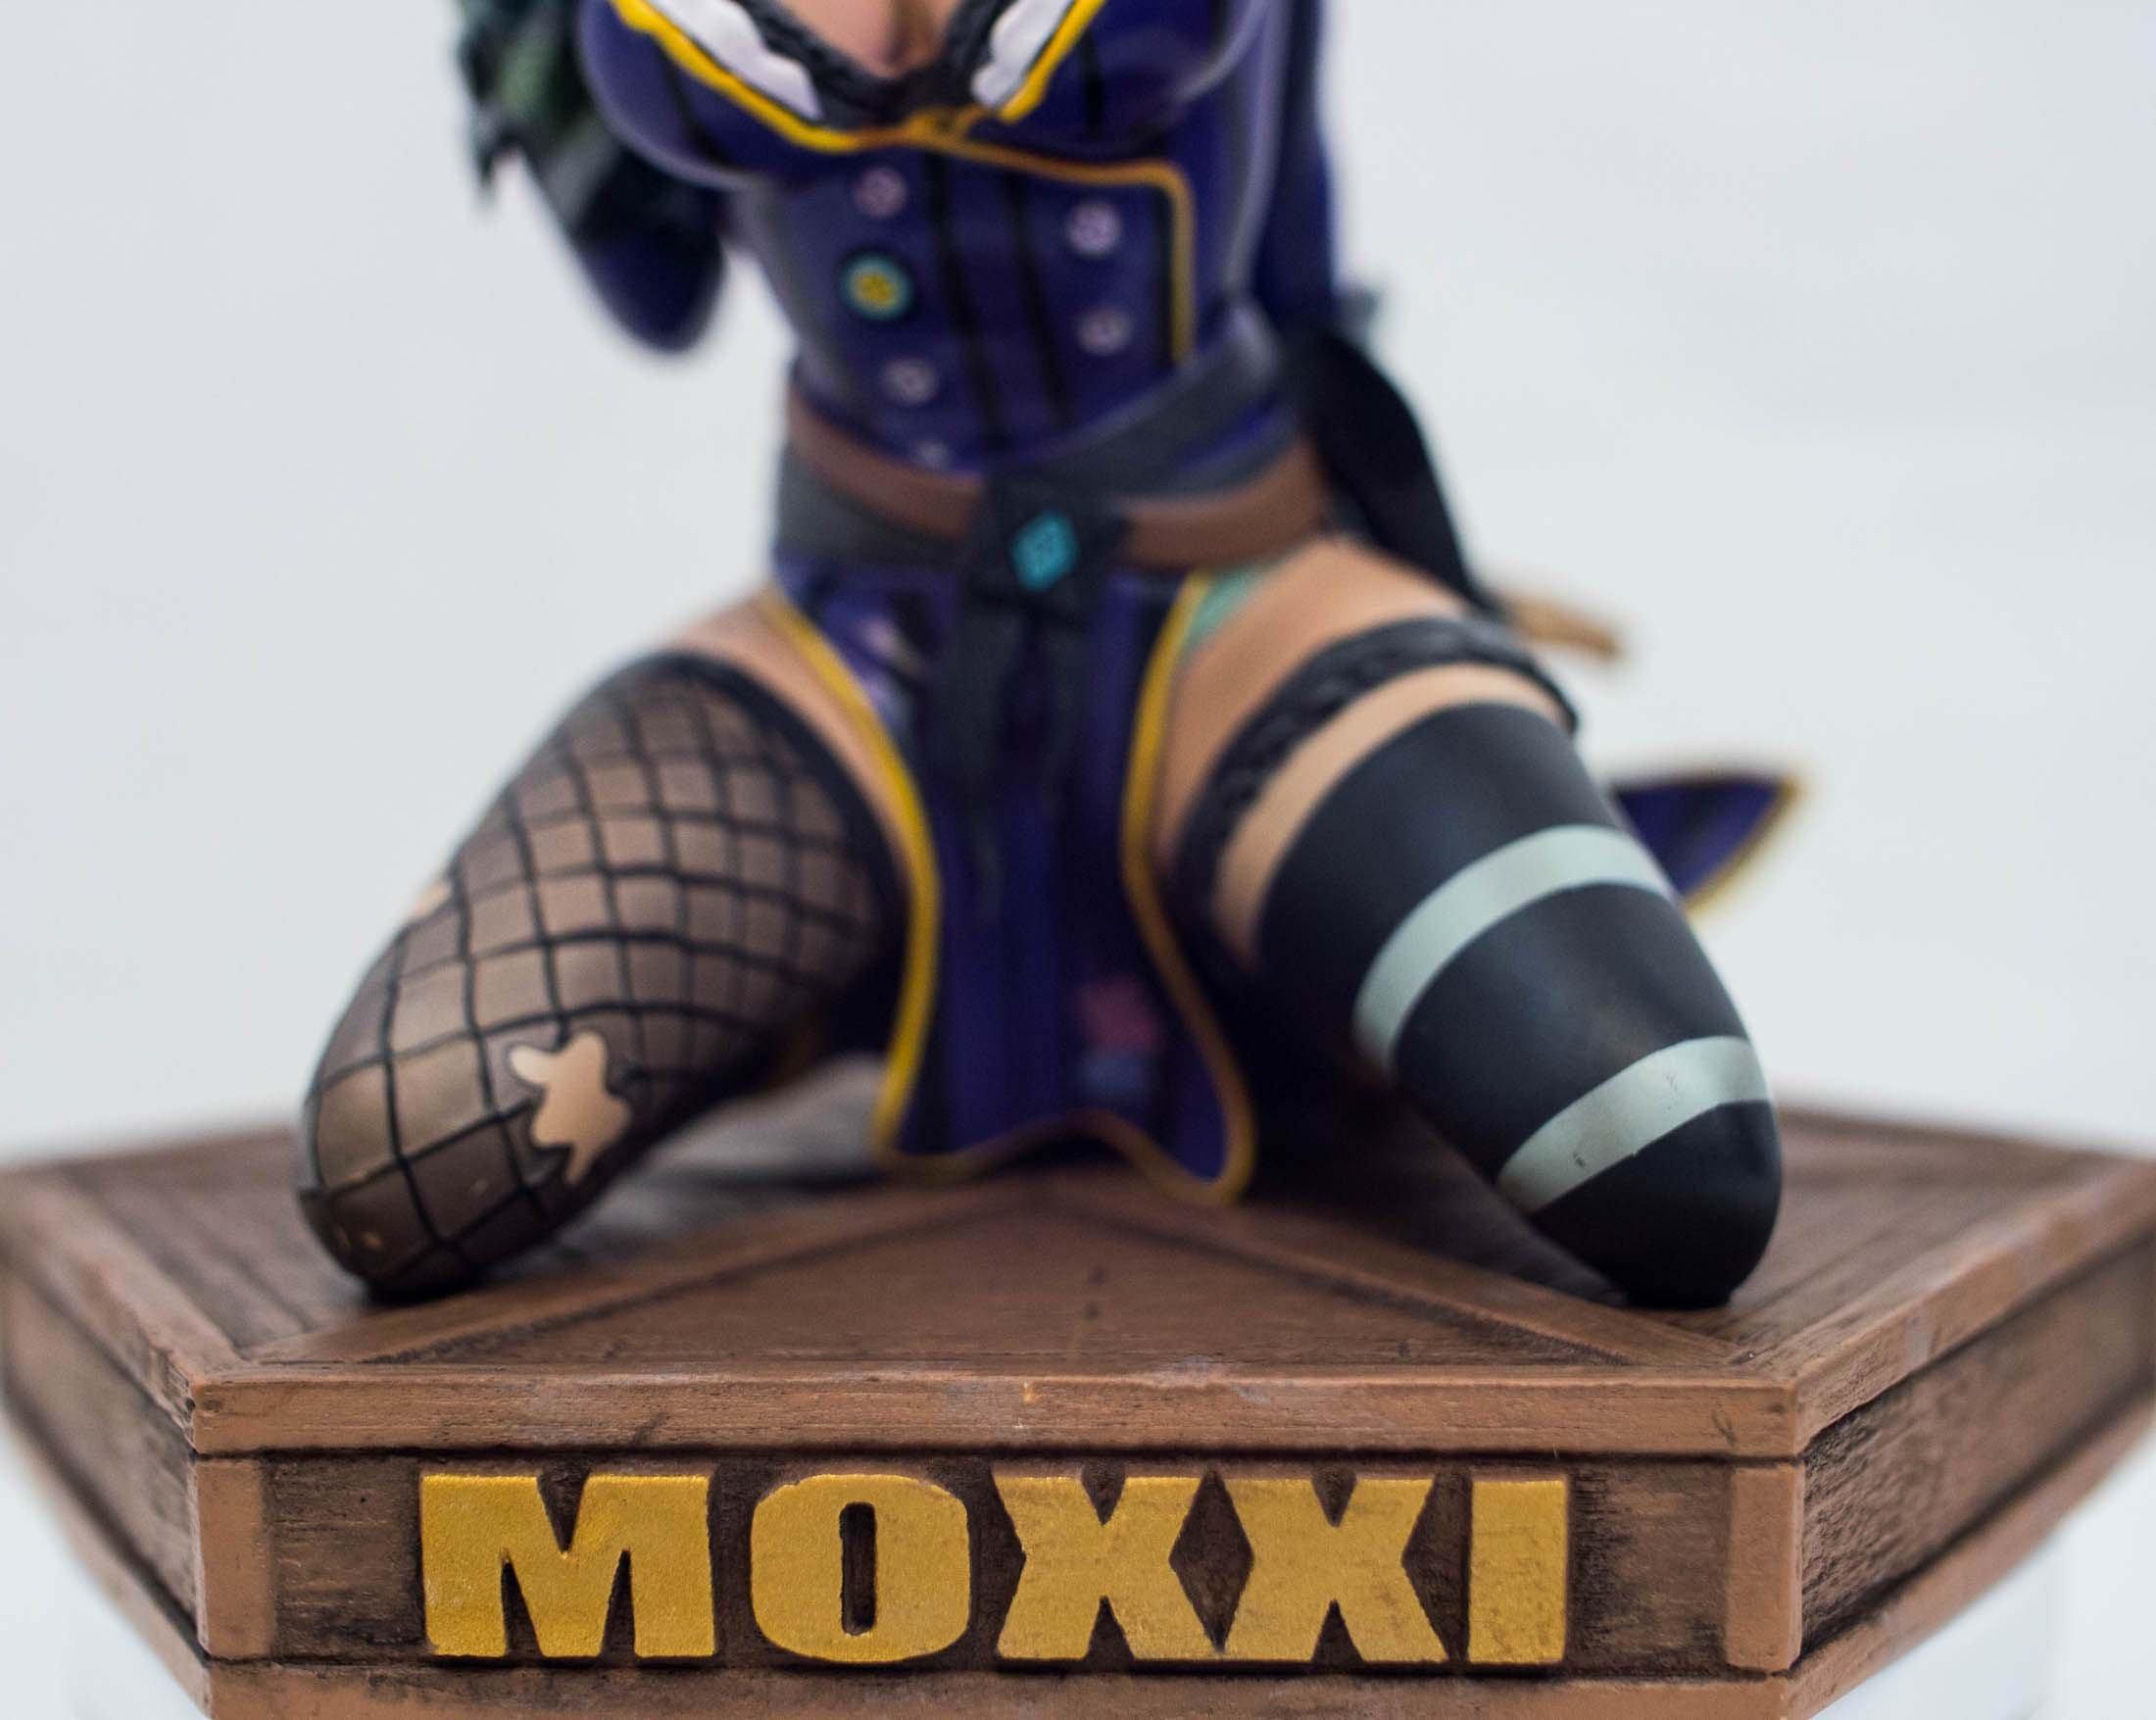 gamestop mad moxxi statue